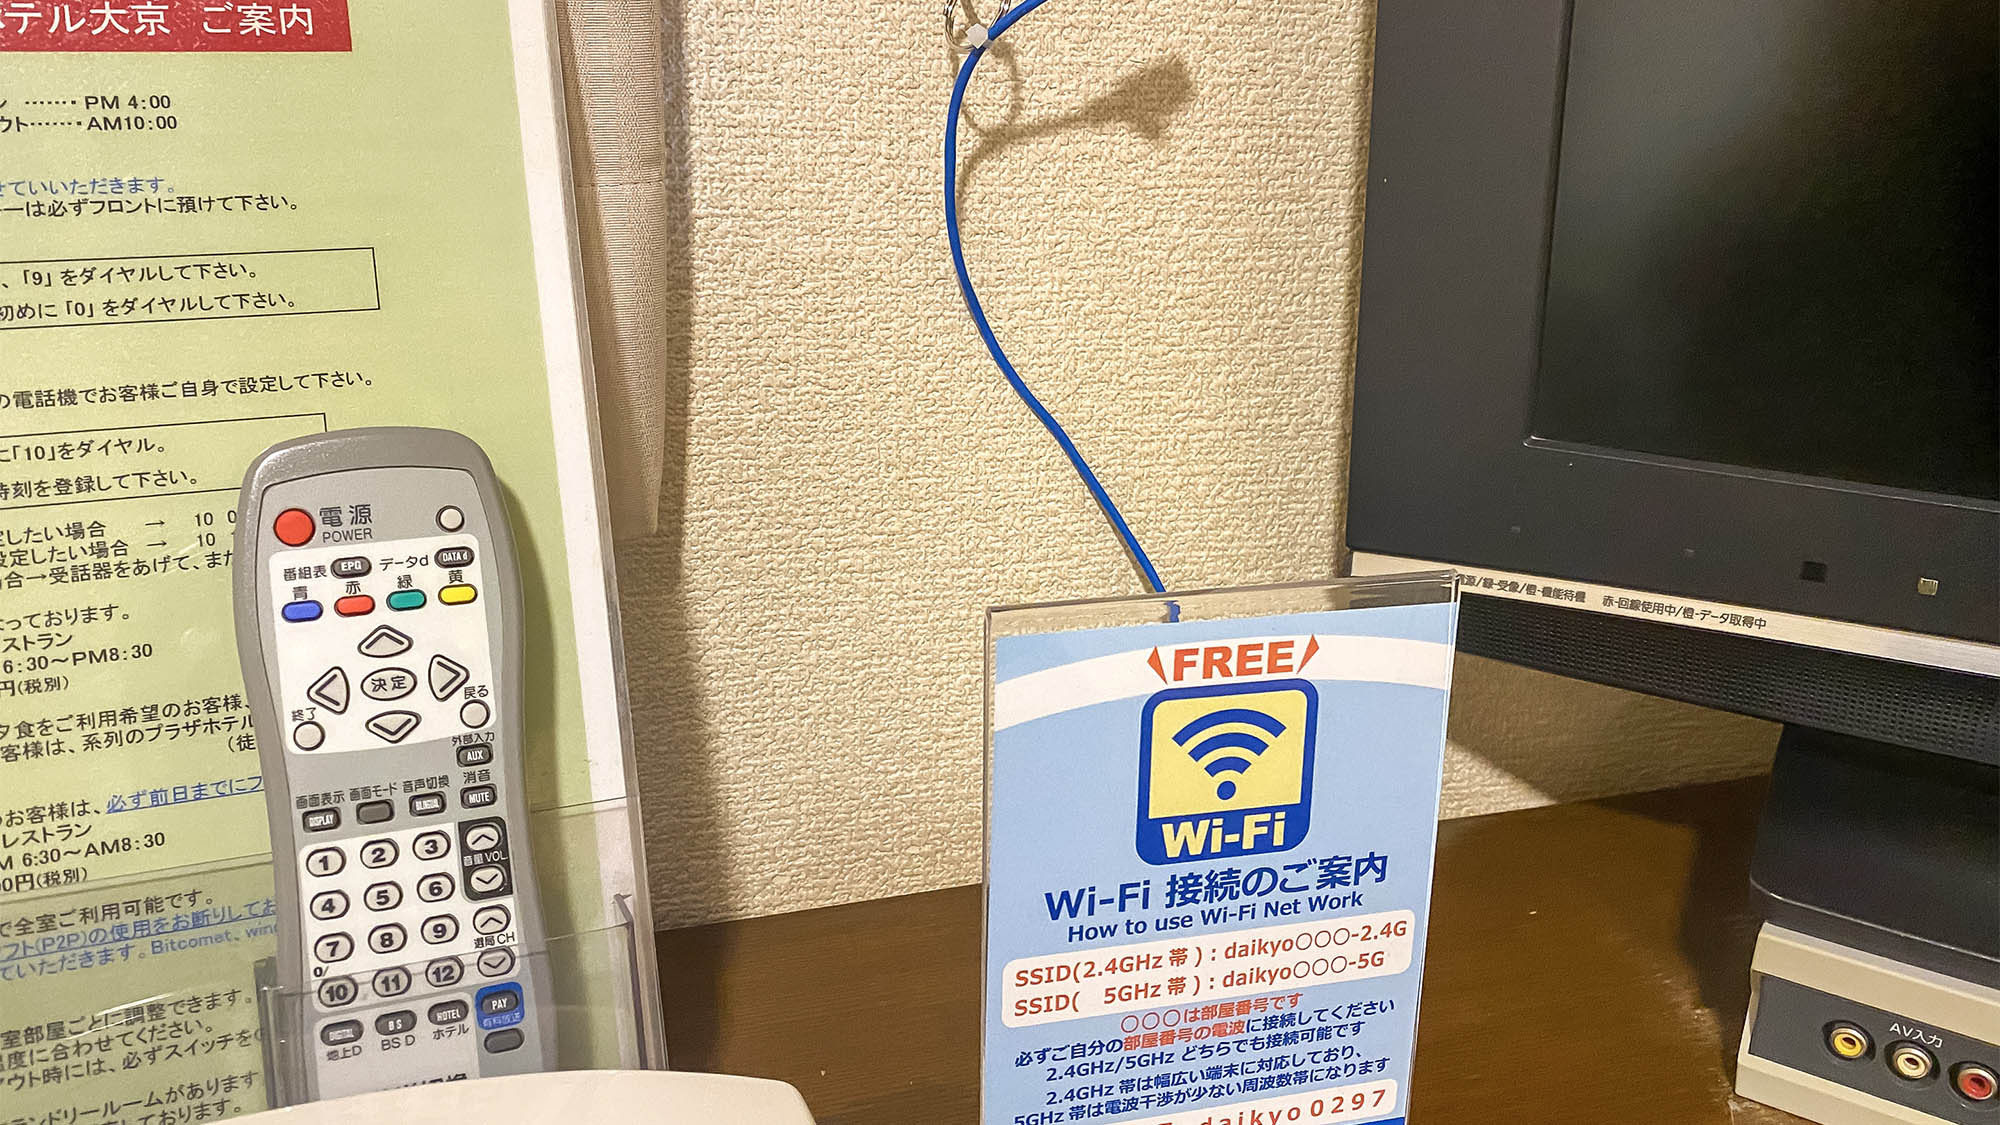 ・全室無料Wi-Fi完備